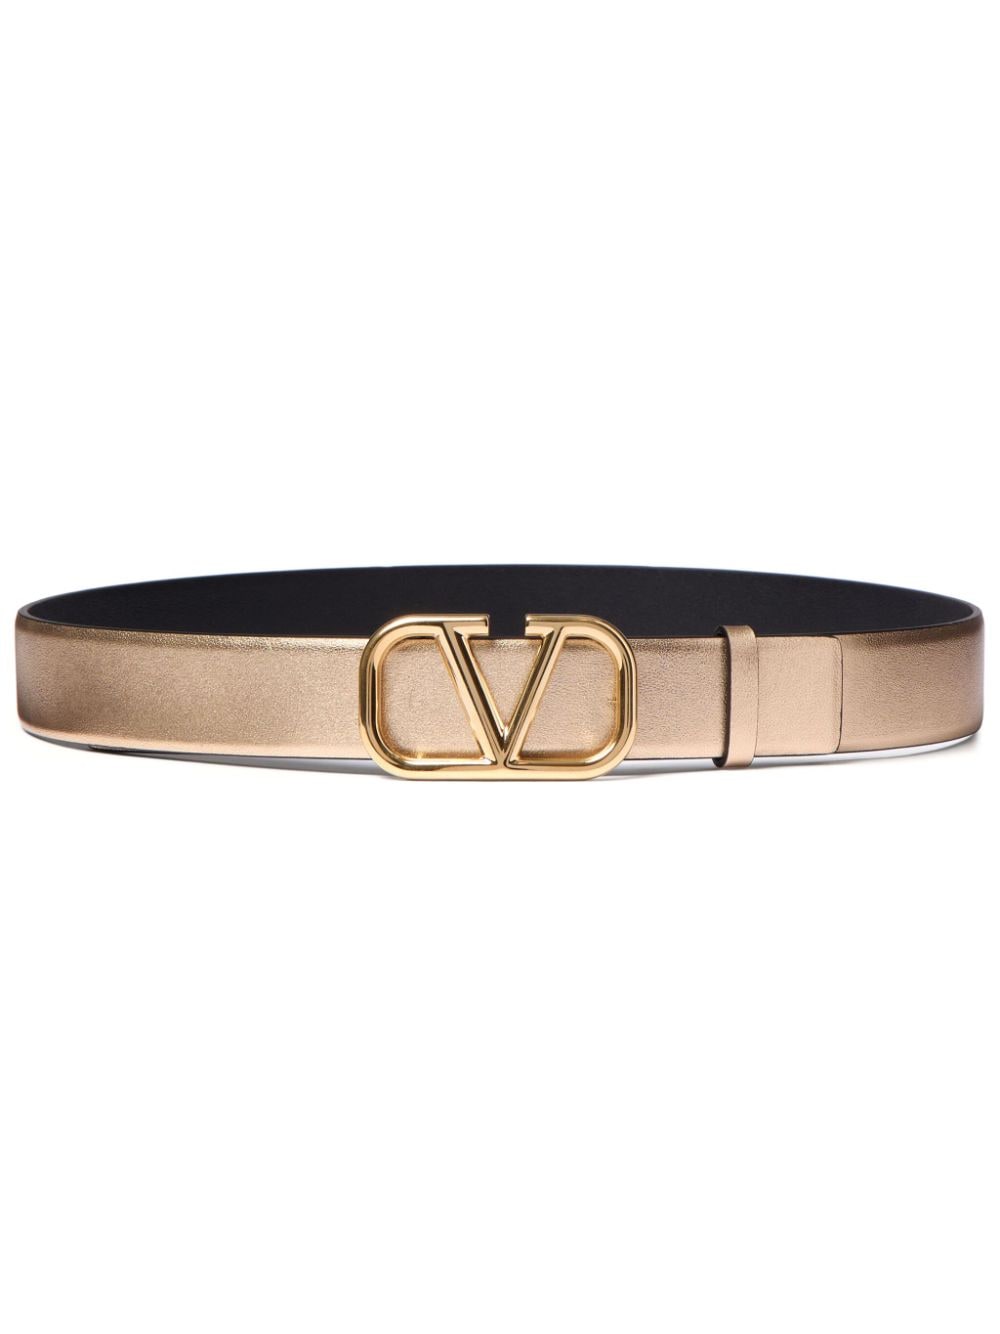 Valentino Garavani VLogo Signature belt - Gold